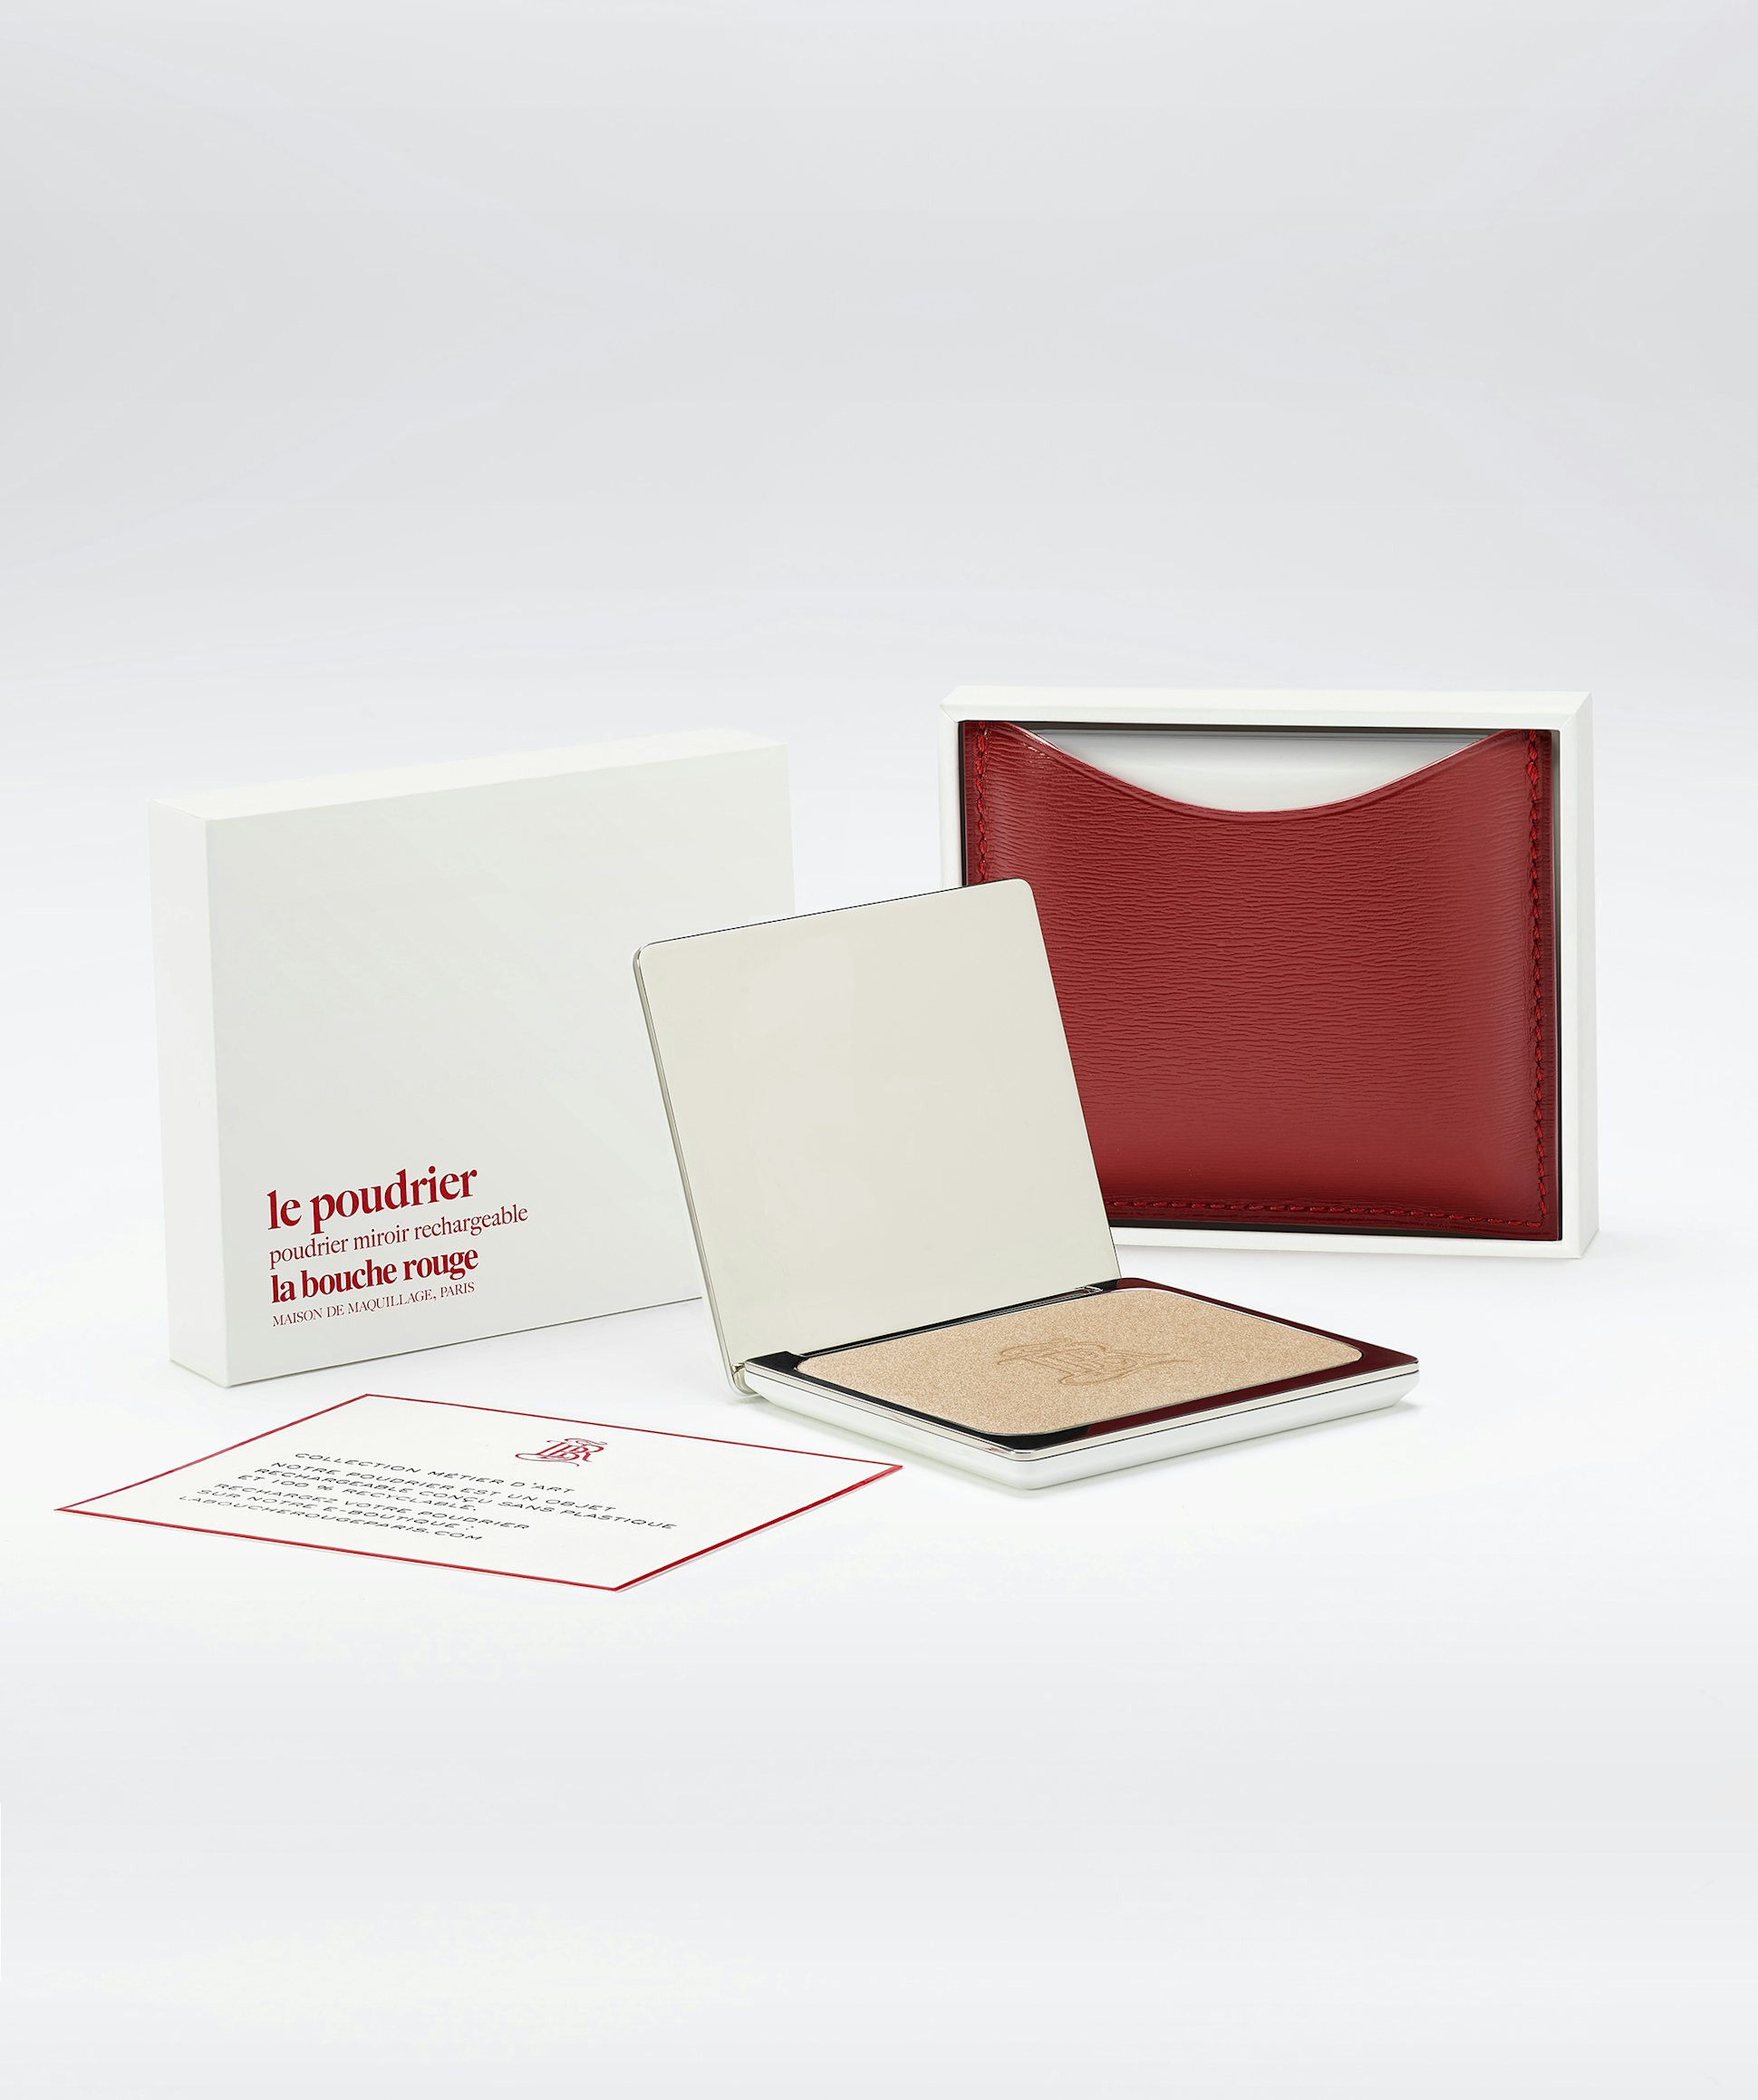 La bouche rouge, Paris La Lumière highlighter in the red fine leather compact case